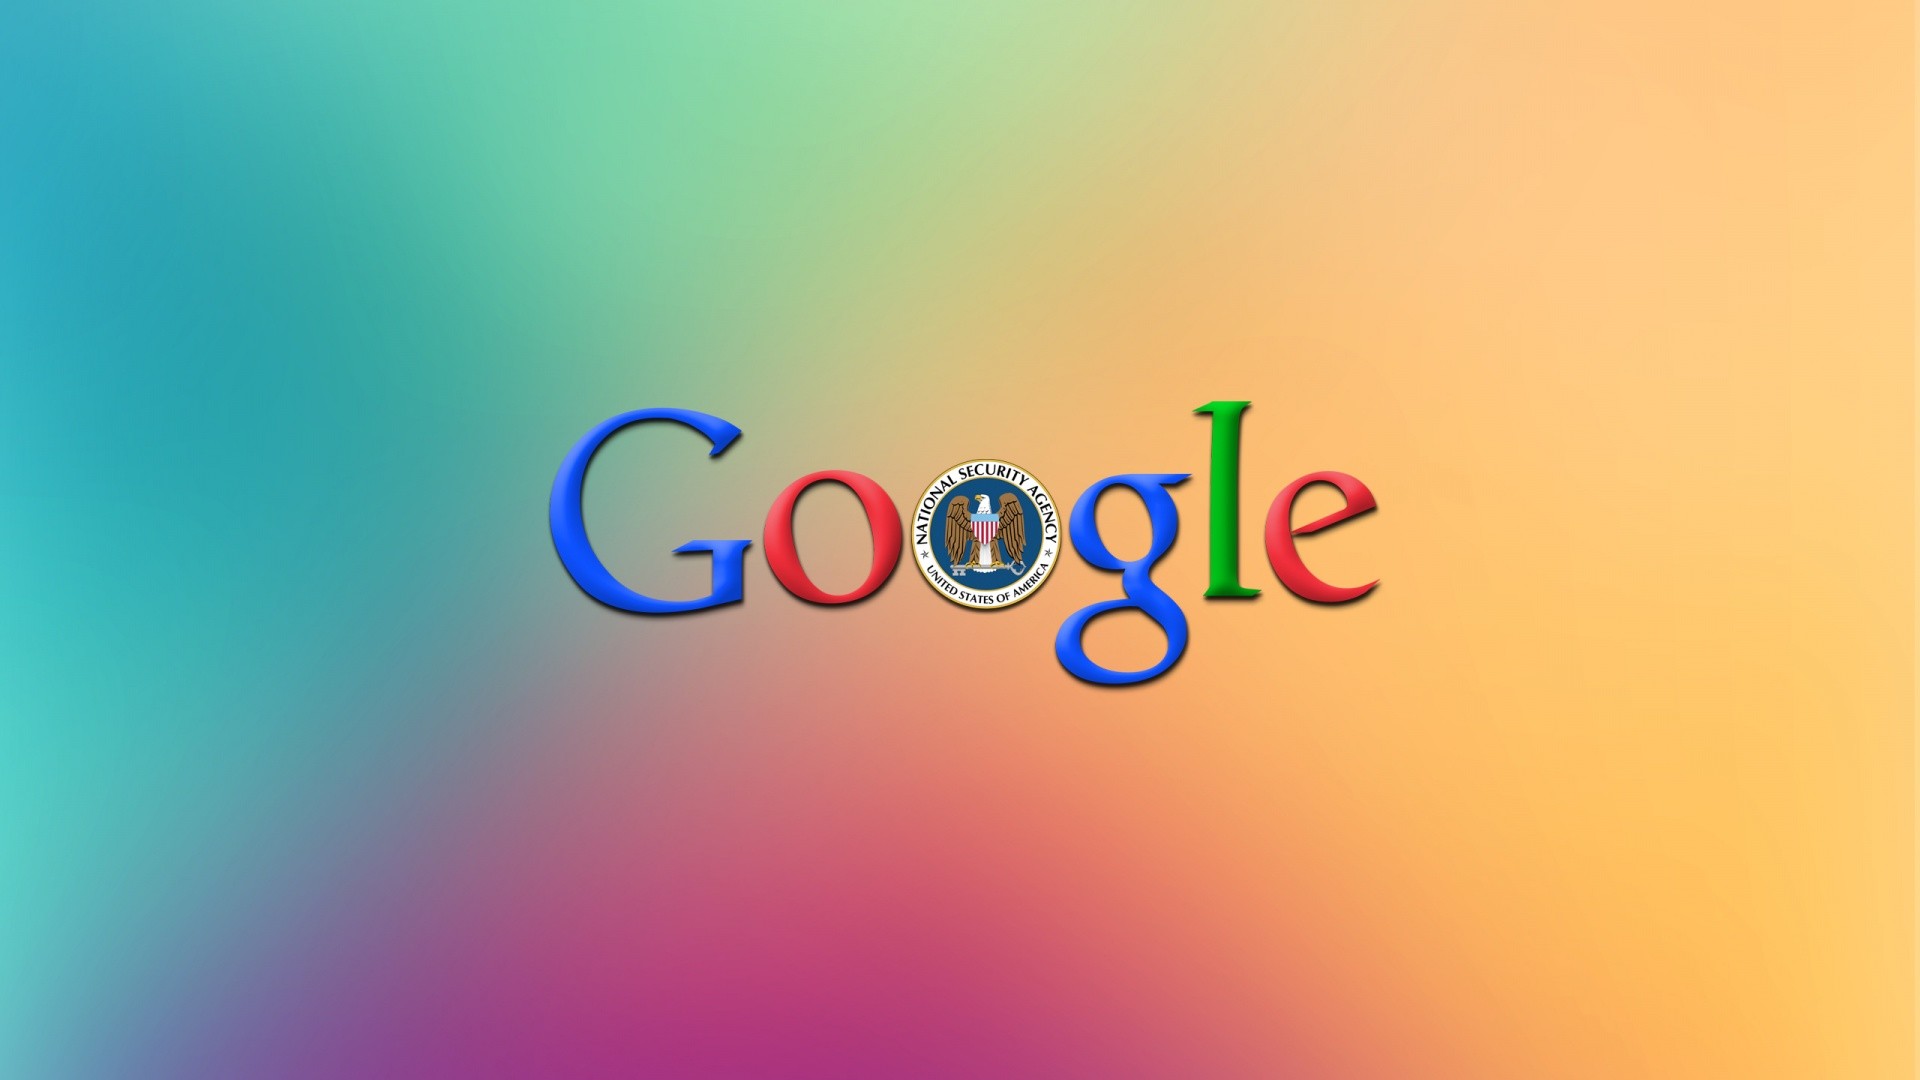 google wallpaper für pc,text,schriftart,grafikdesign,grafik,design